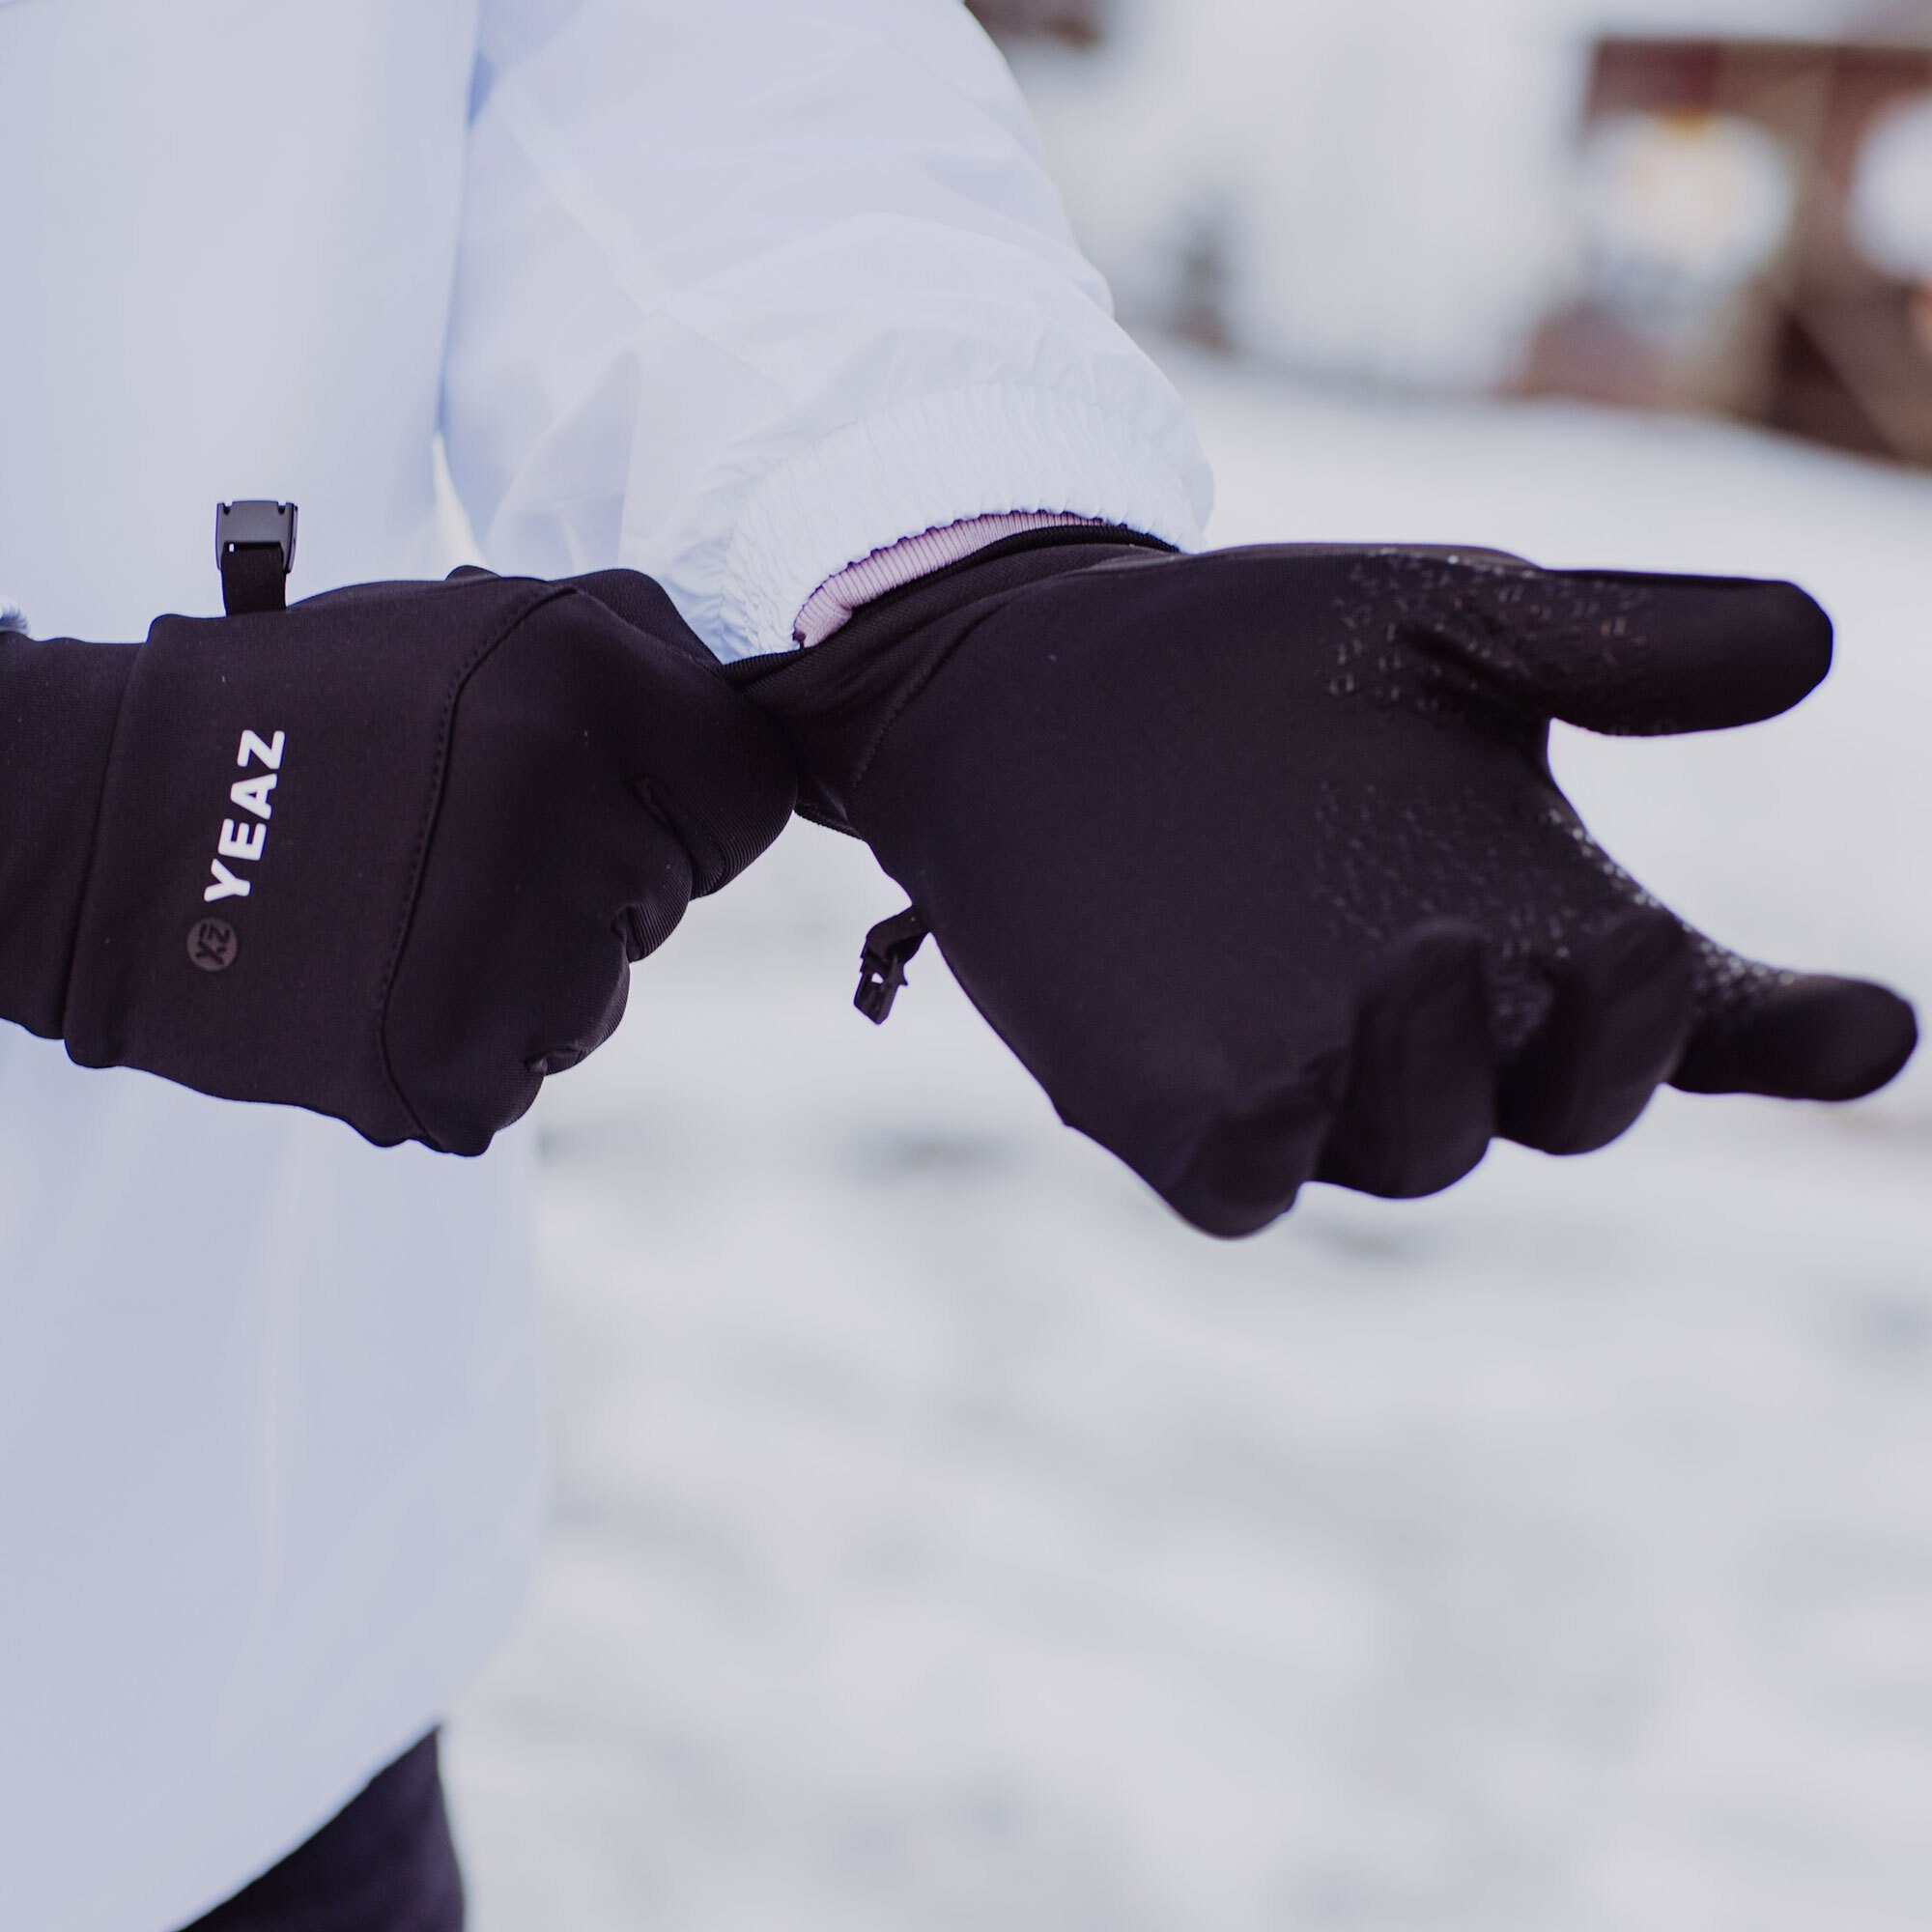 YEAZ Skihandschuhe JIP sporthandschuhe Touch-Funktion für Smart Devices